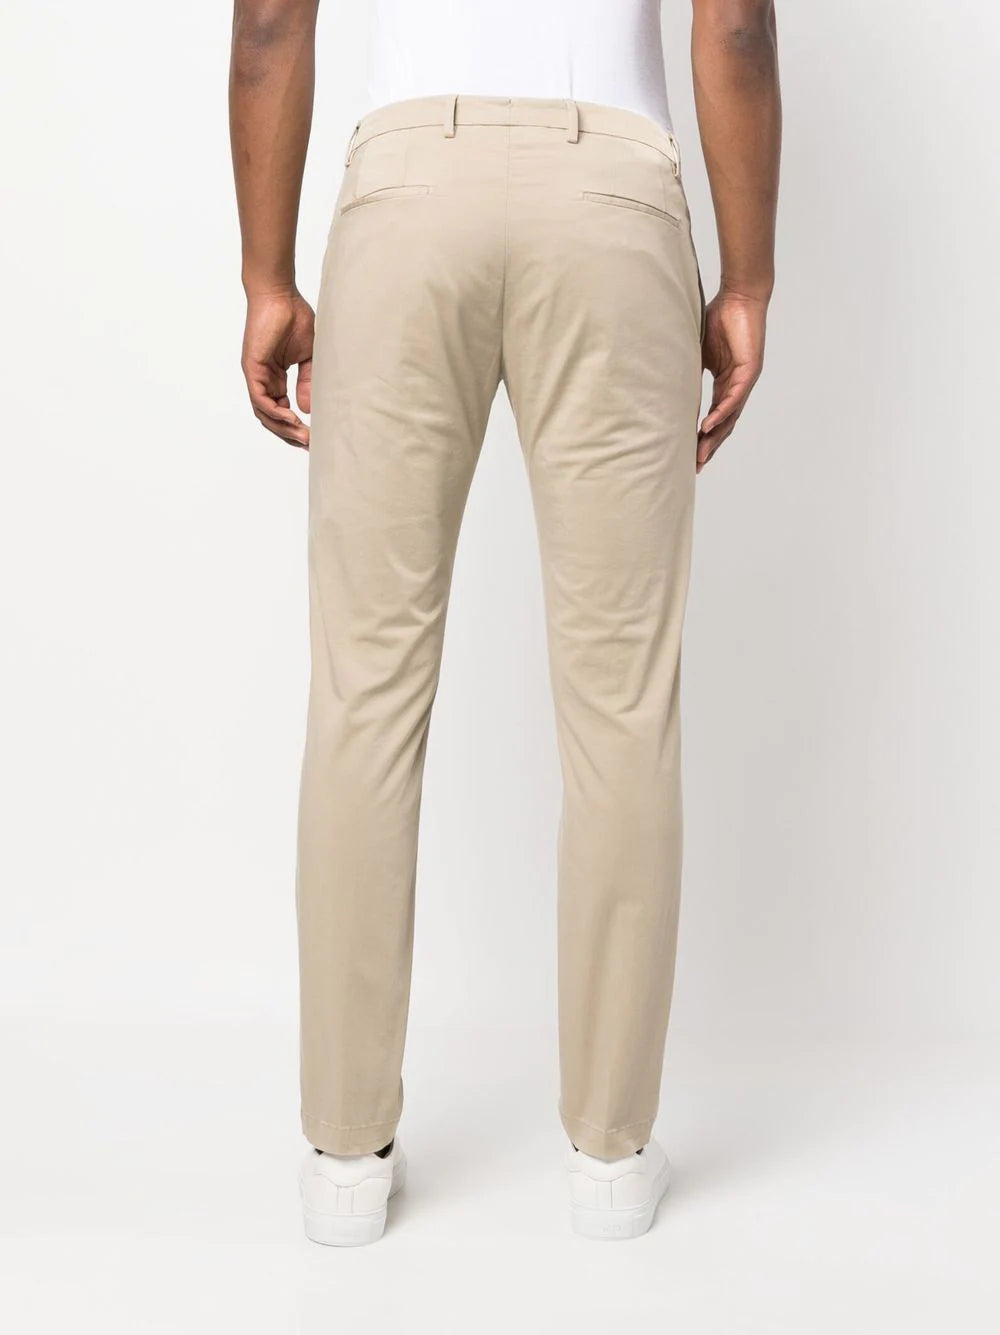 Pantalone Briglia Slim Fit / Beige - Ideal Moda